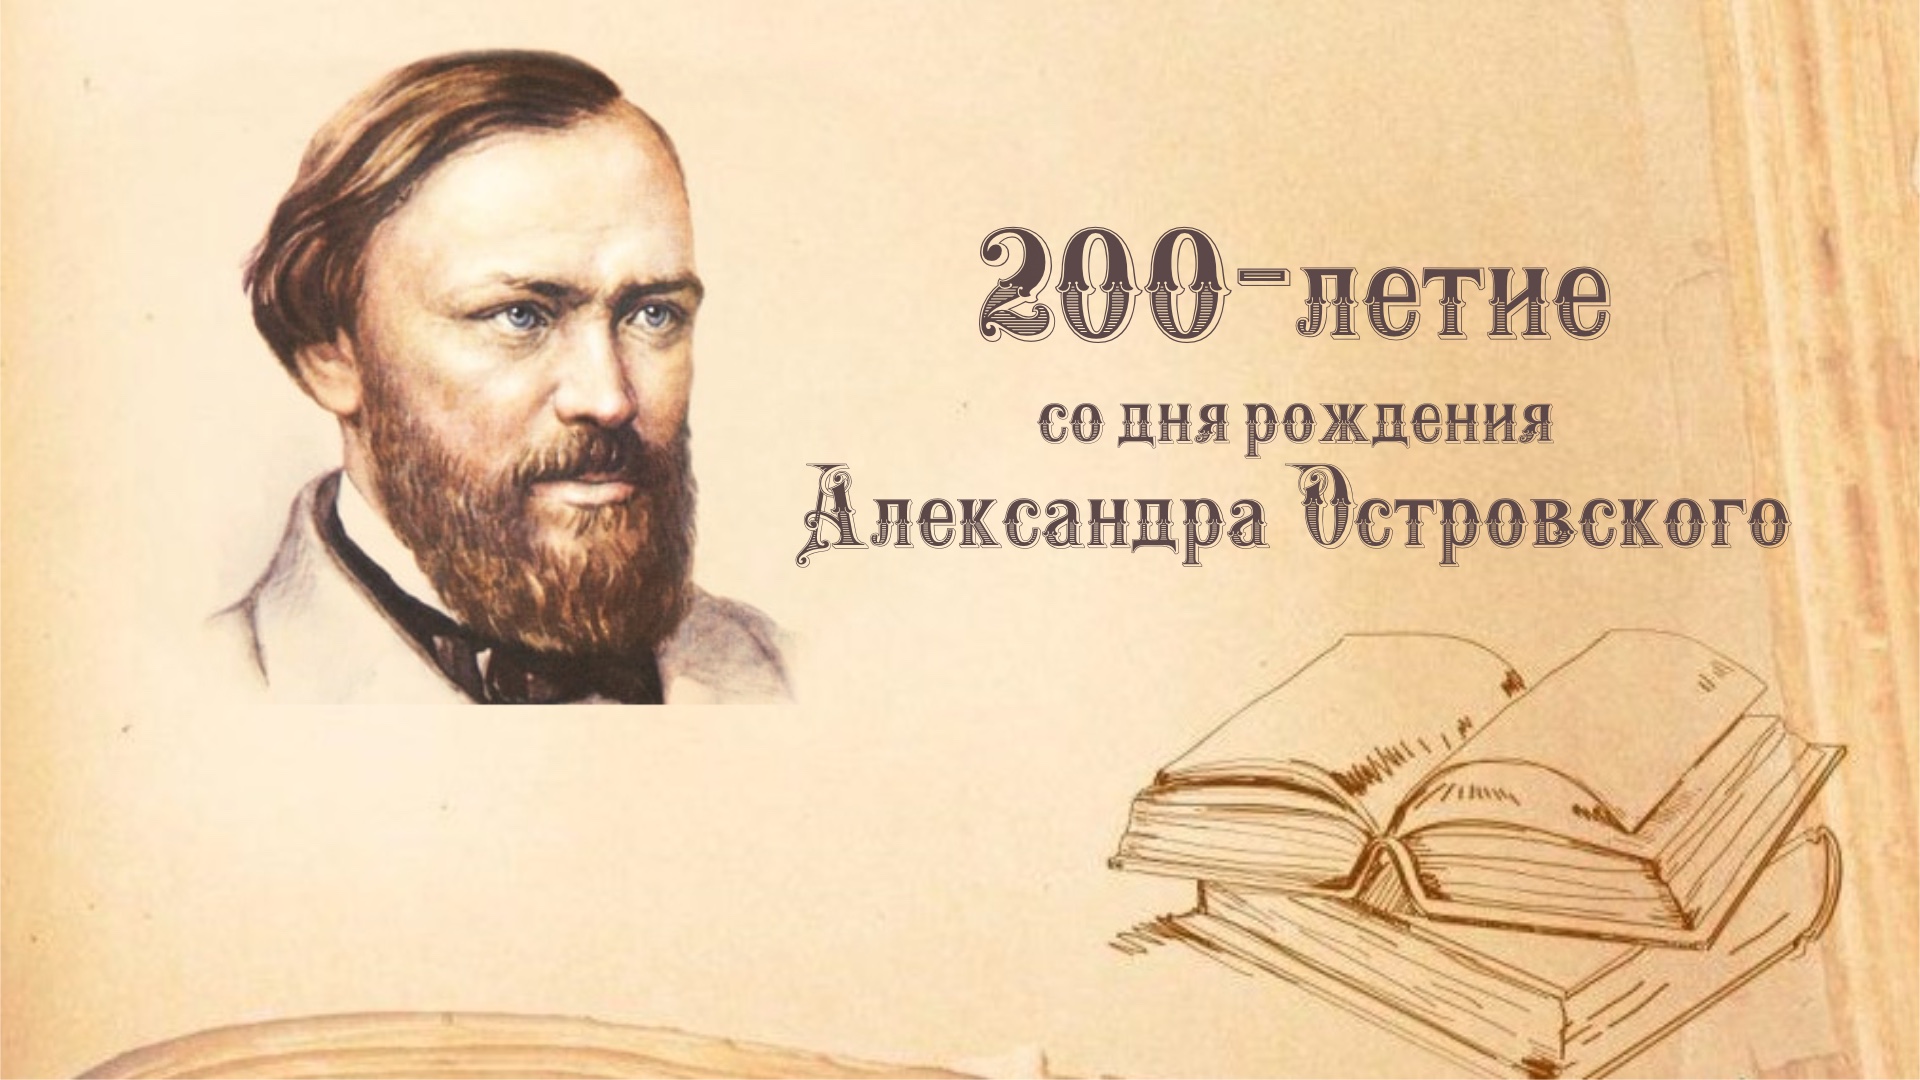 200-летие со дня рождения А.Н. Островского.